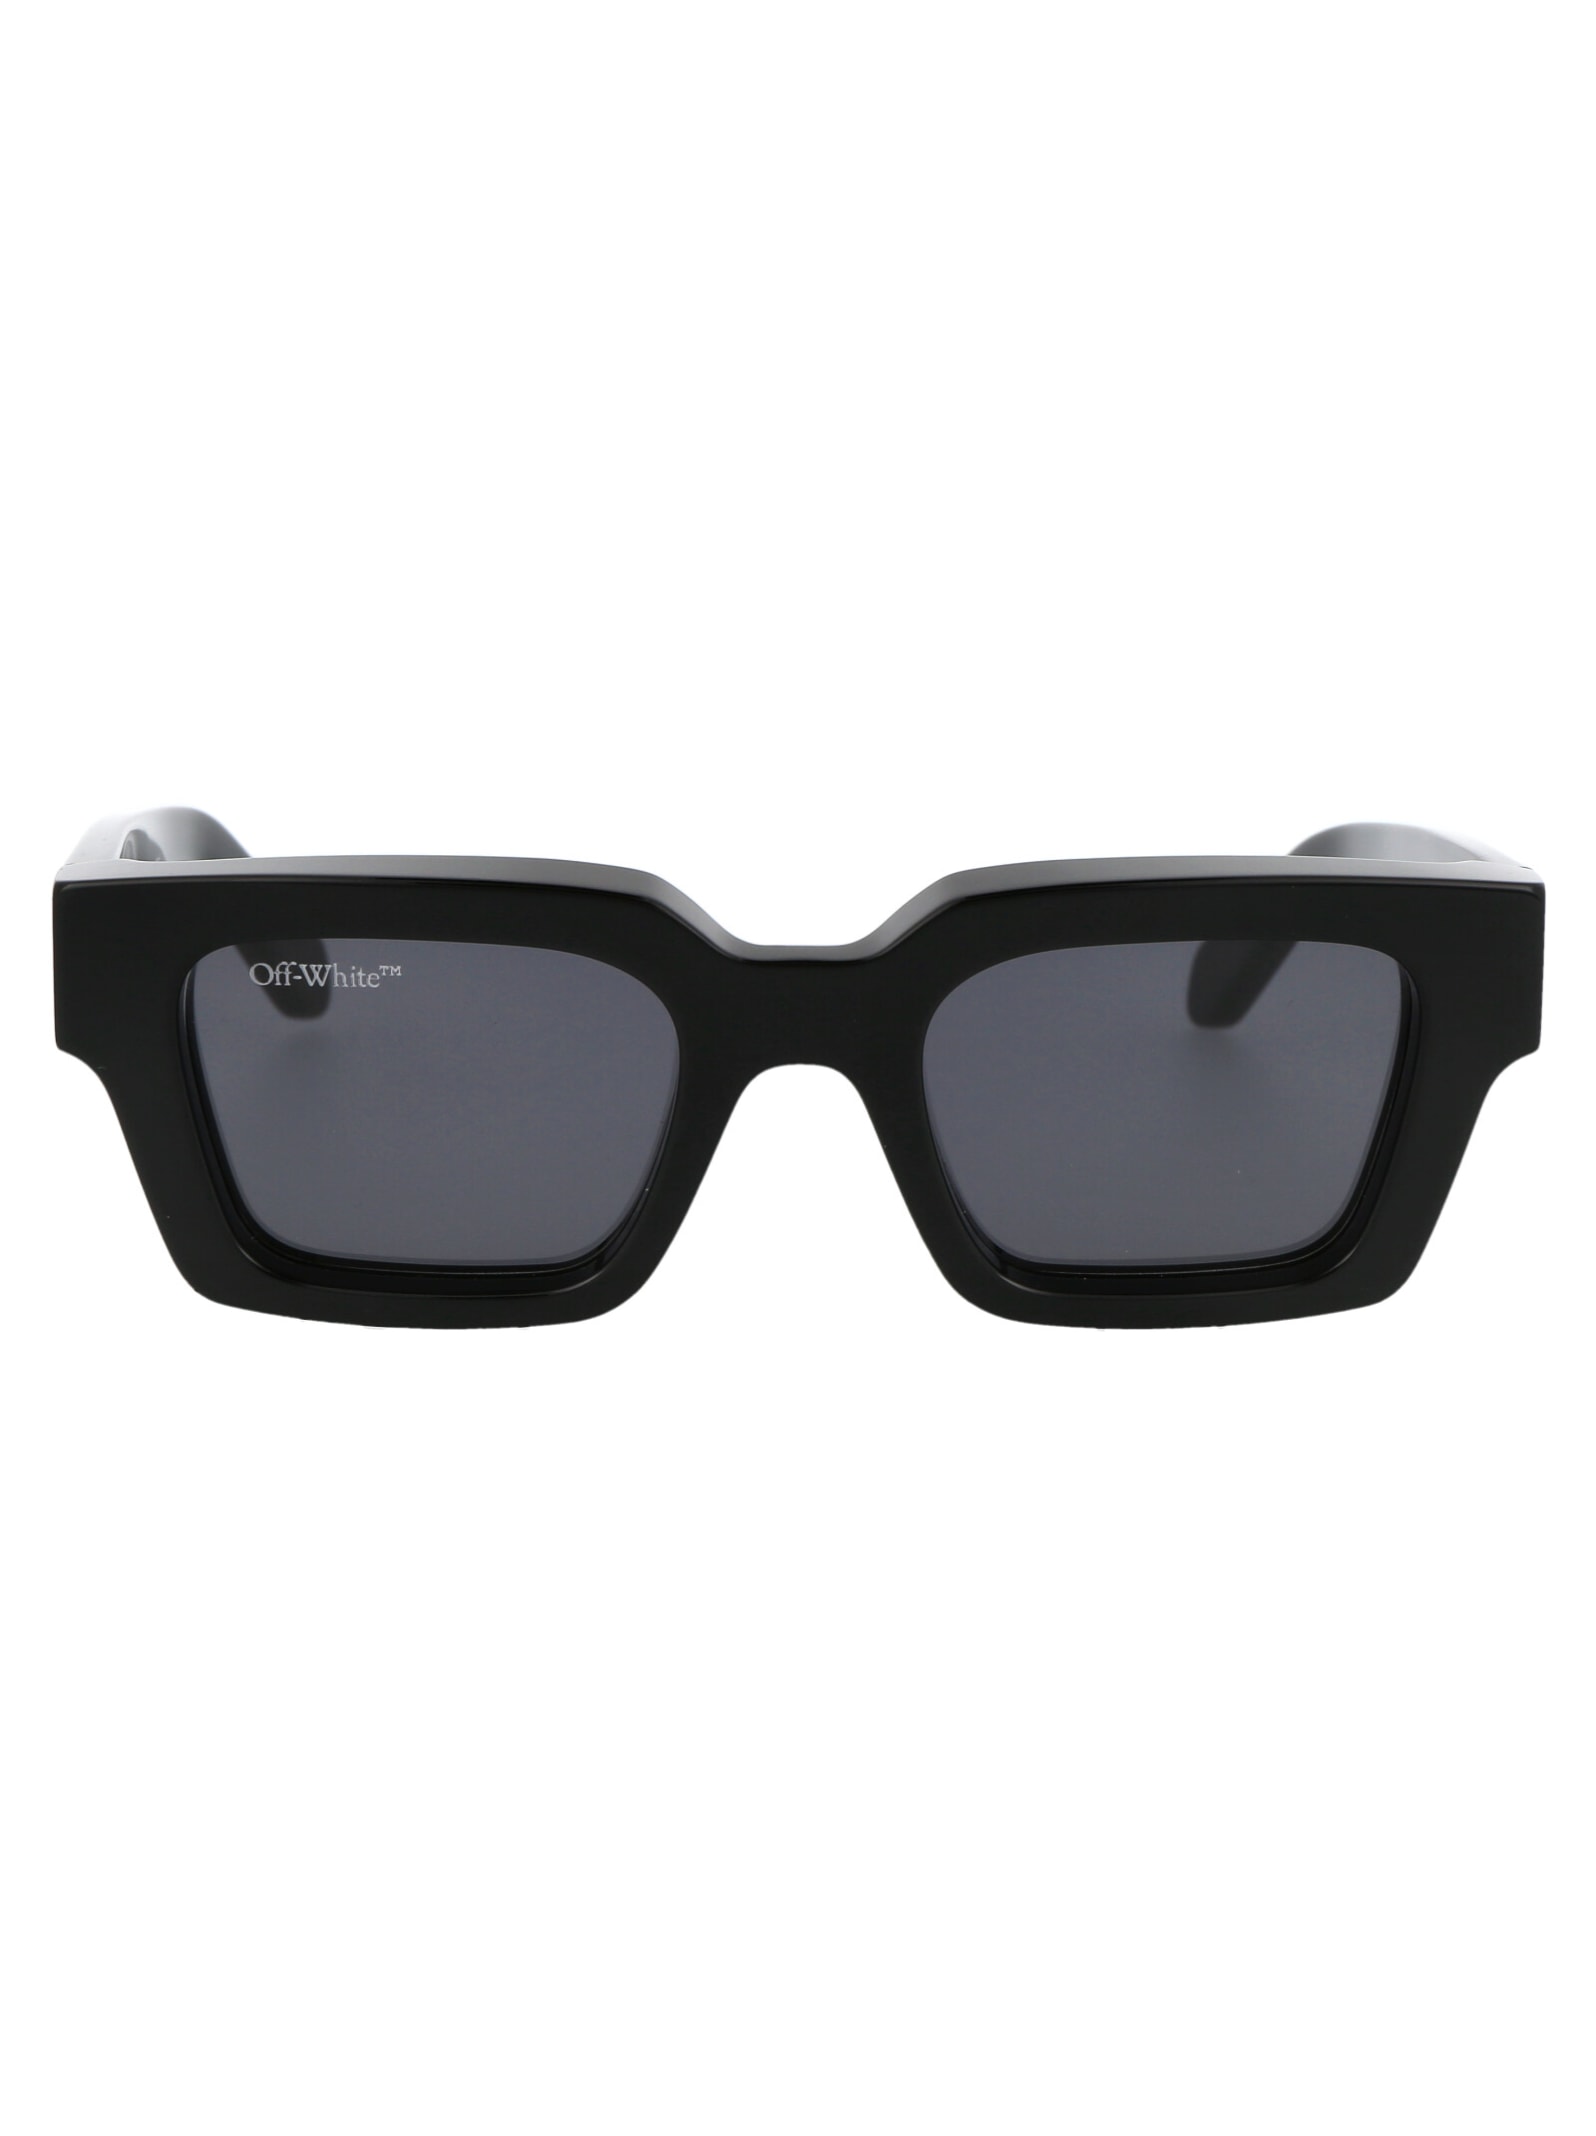 Off-white Virgil Sunglasses In 1007 Black Dark Grey